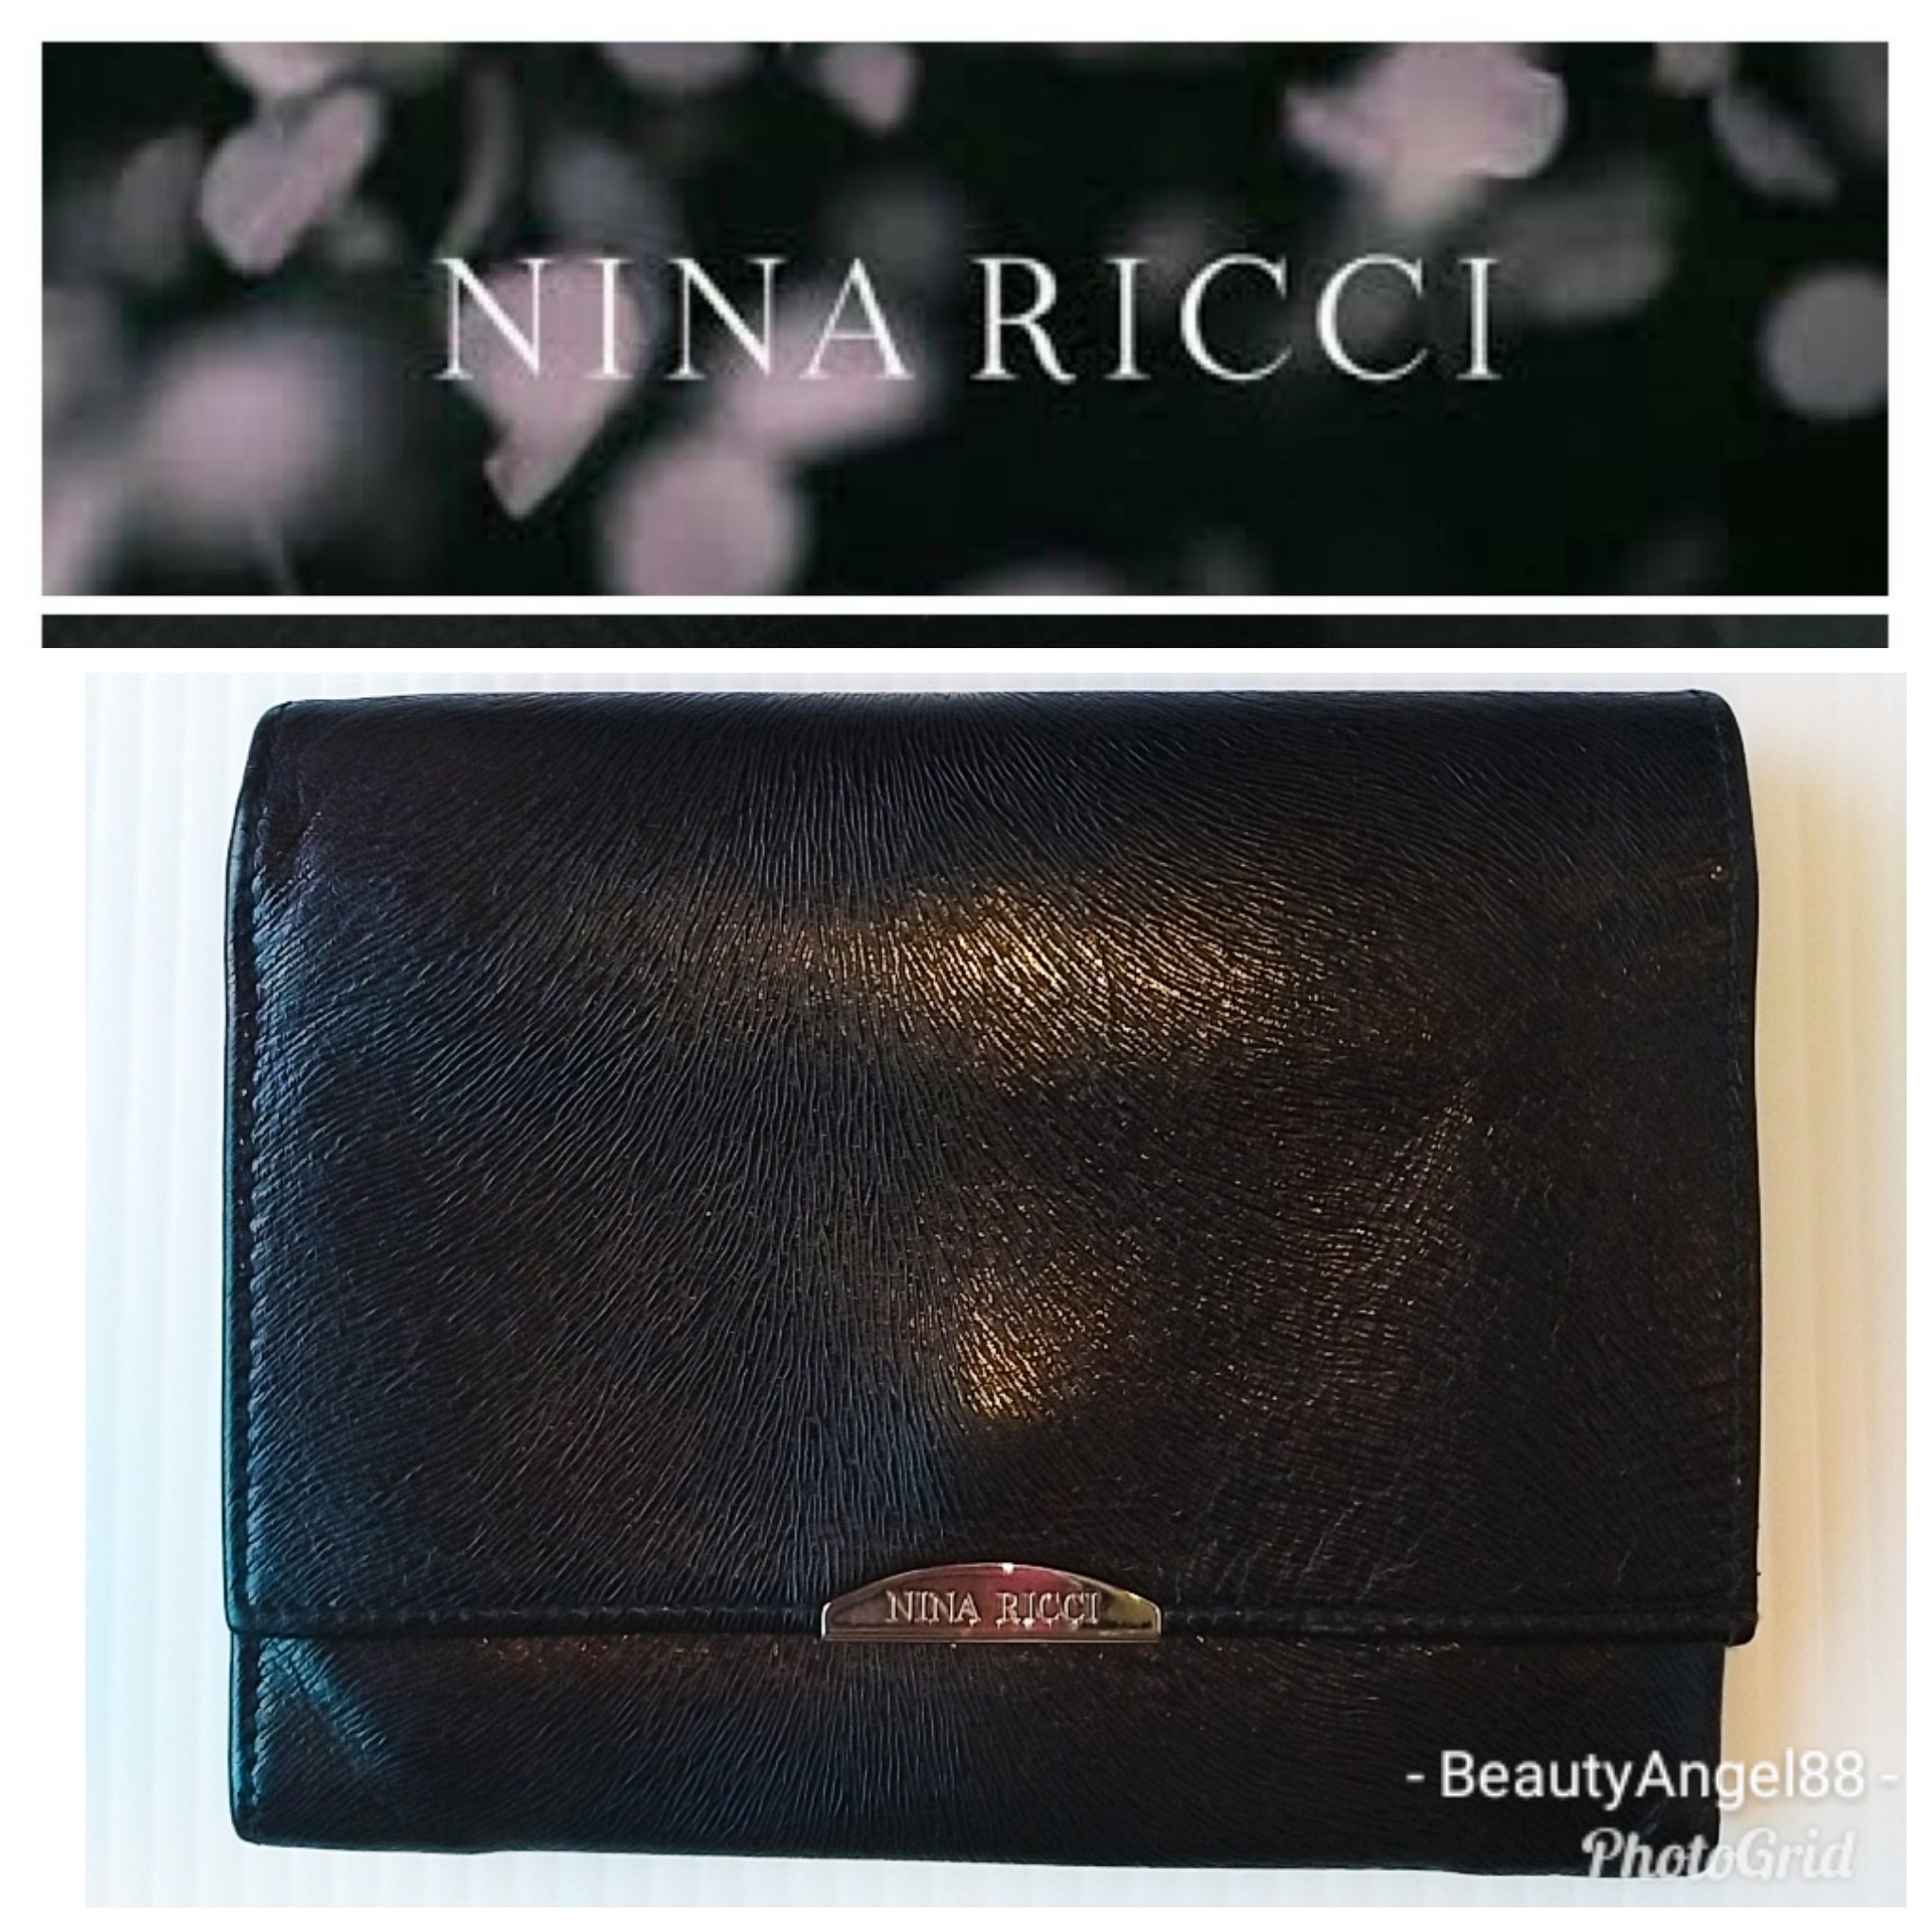 真品近新 法國 NINA RICCI 蓮娜麗姿 義大利真皮製 錢包 可放零錢 中夾 皮夾 488 一元起標